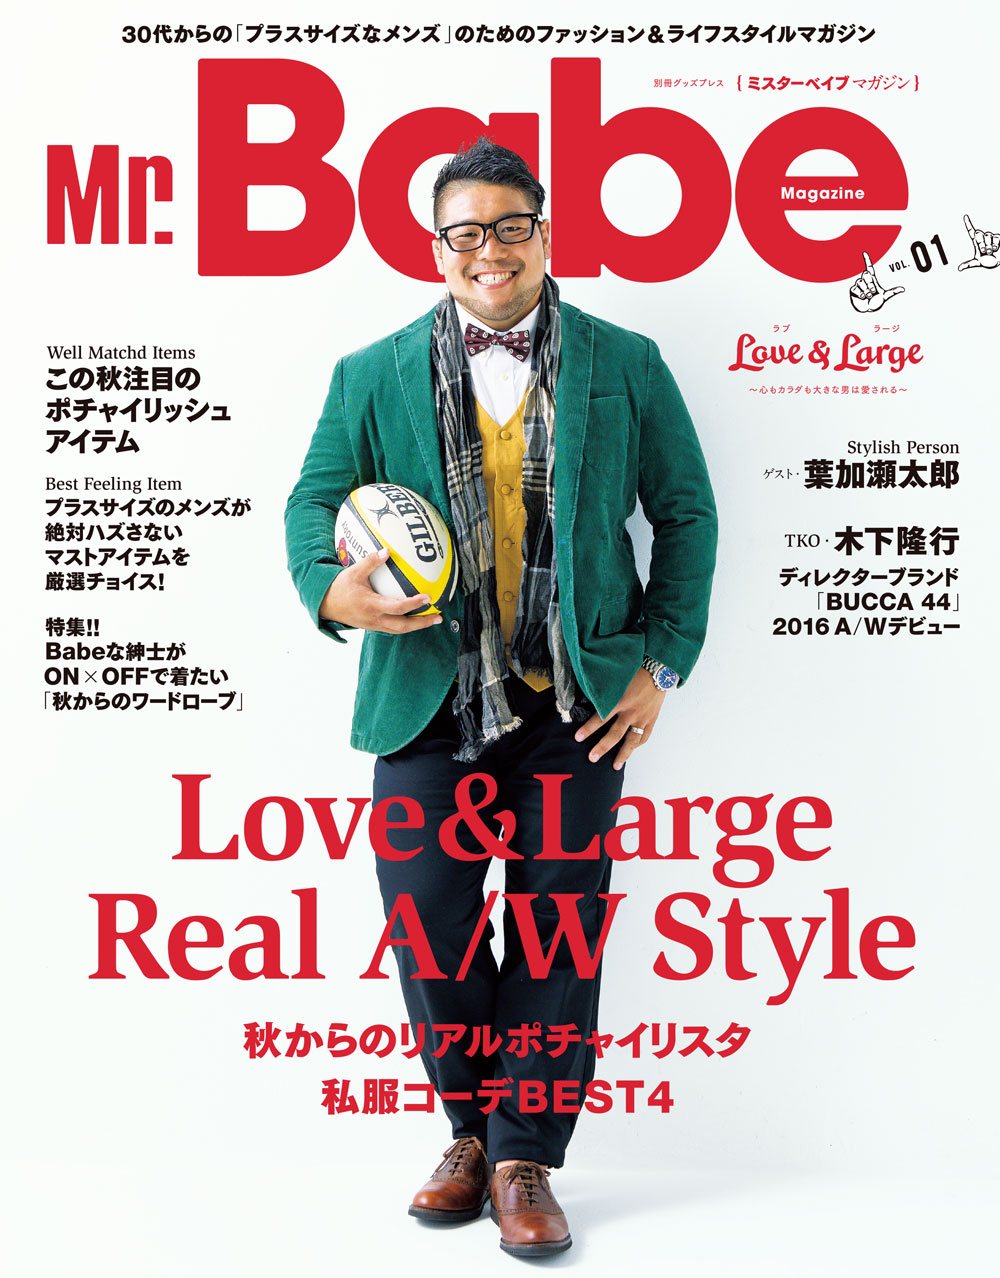 日本初 ポッチャリ系メンズ のためのファッション雑誌 Mr Babe が Mr Babe Magazine としてリニューアル 9月23日 金 に徳間書店より新スタート 徳間書店のプレスリリース